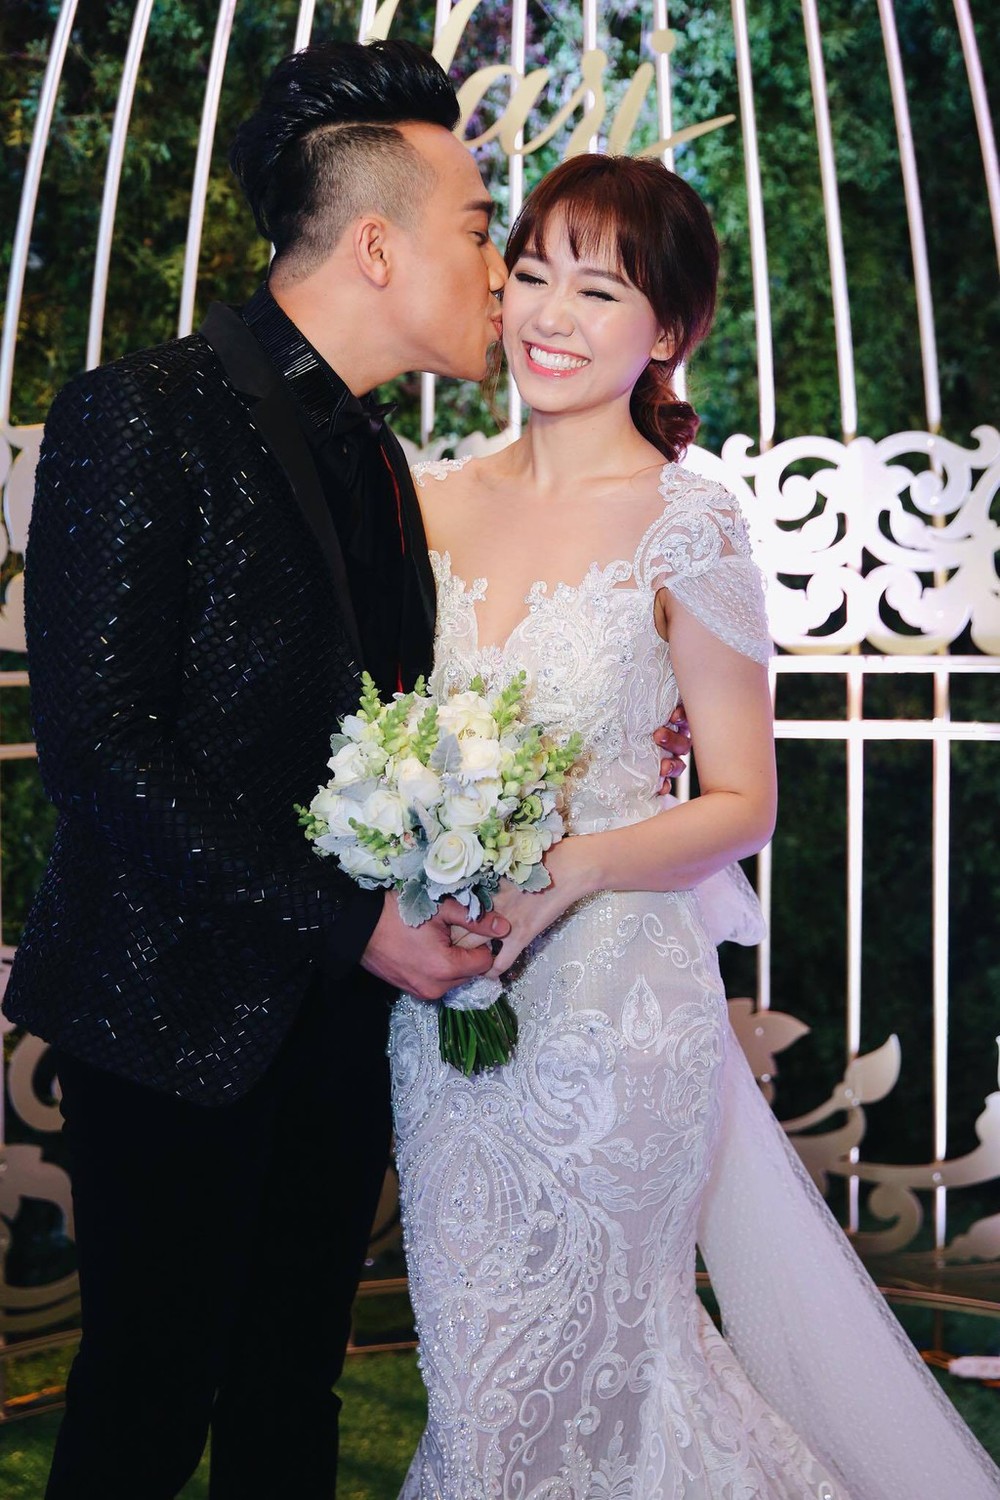  
Mặc dù đã 3 năm nhưng đám cưới của họ vẫn gân ấn tượng mạng với mọi người. (Ảnh: Facebook) - Tin sao Viet - Tin tuc sao Viet - Scandal sao Viet - Tin tuc cua Sao - Tin cua Sao